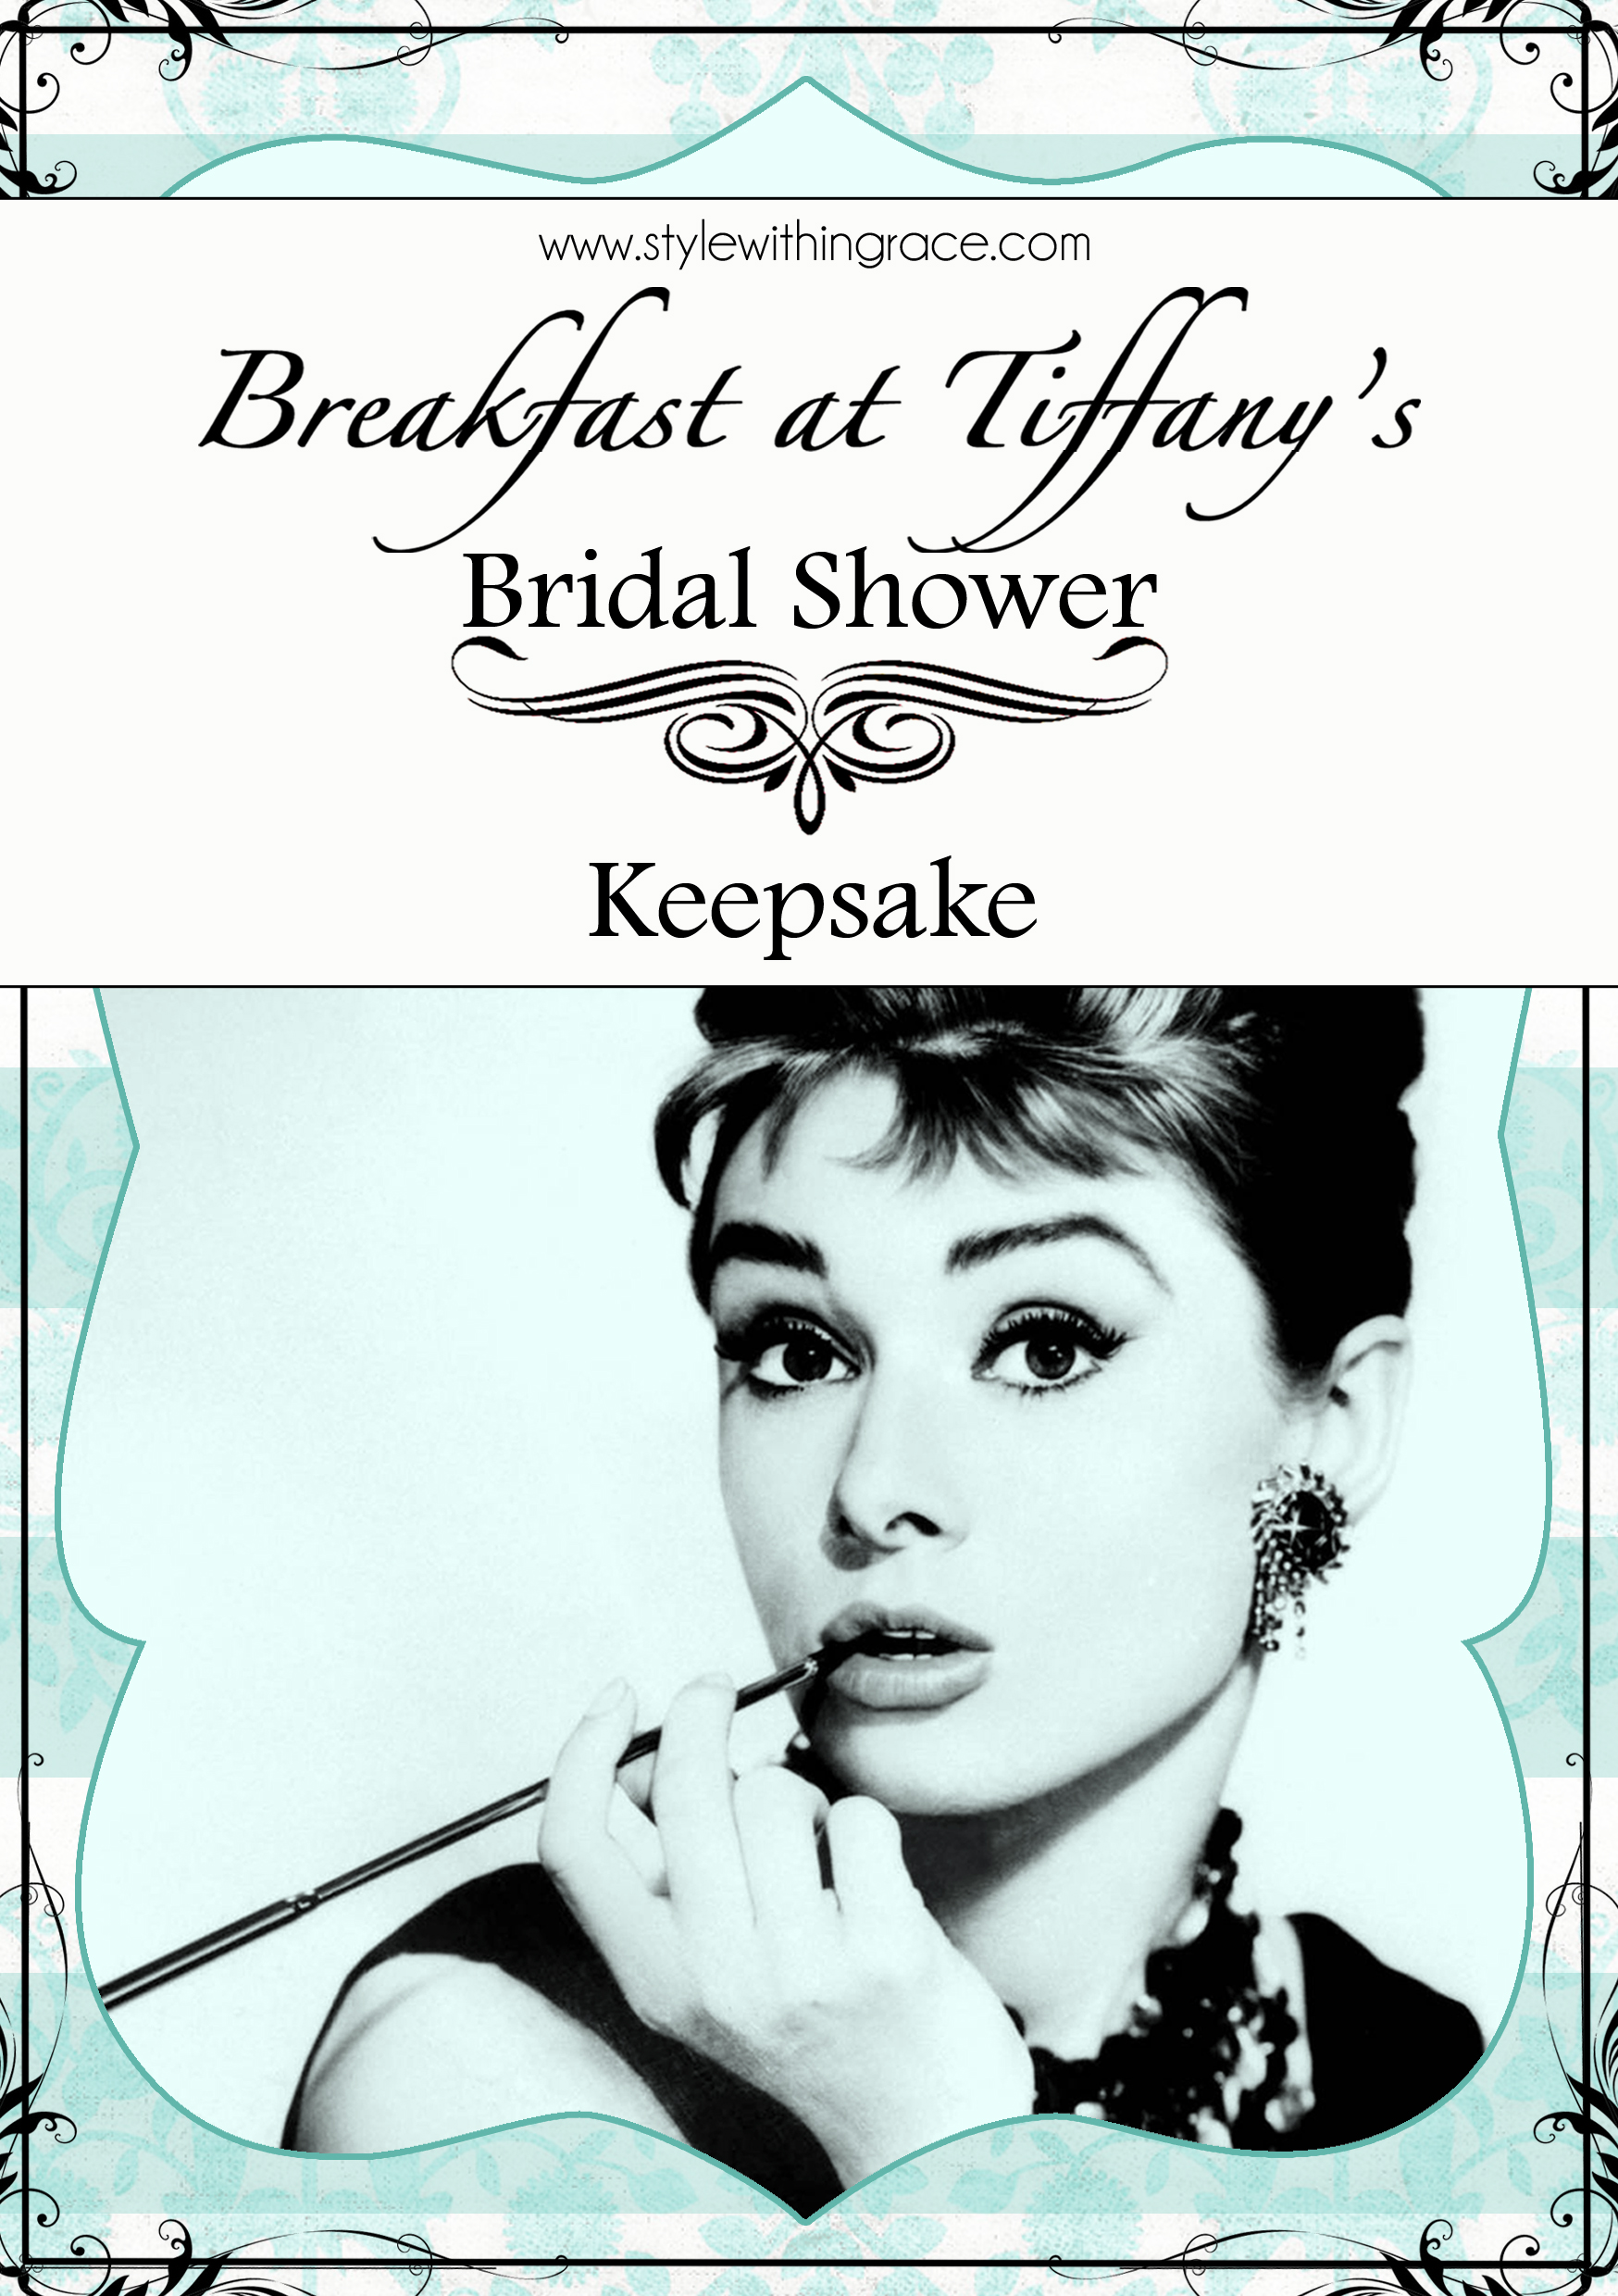 Breakfast at Tiffany's Bridal Shower Keepsake